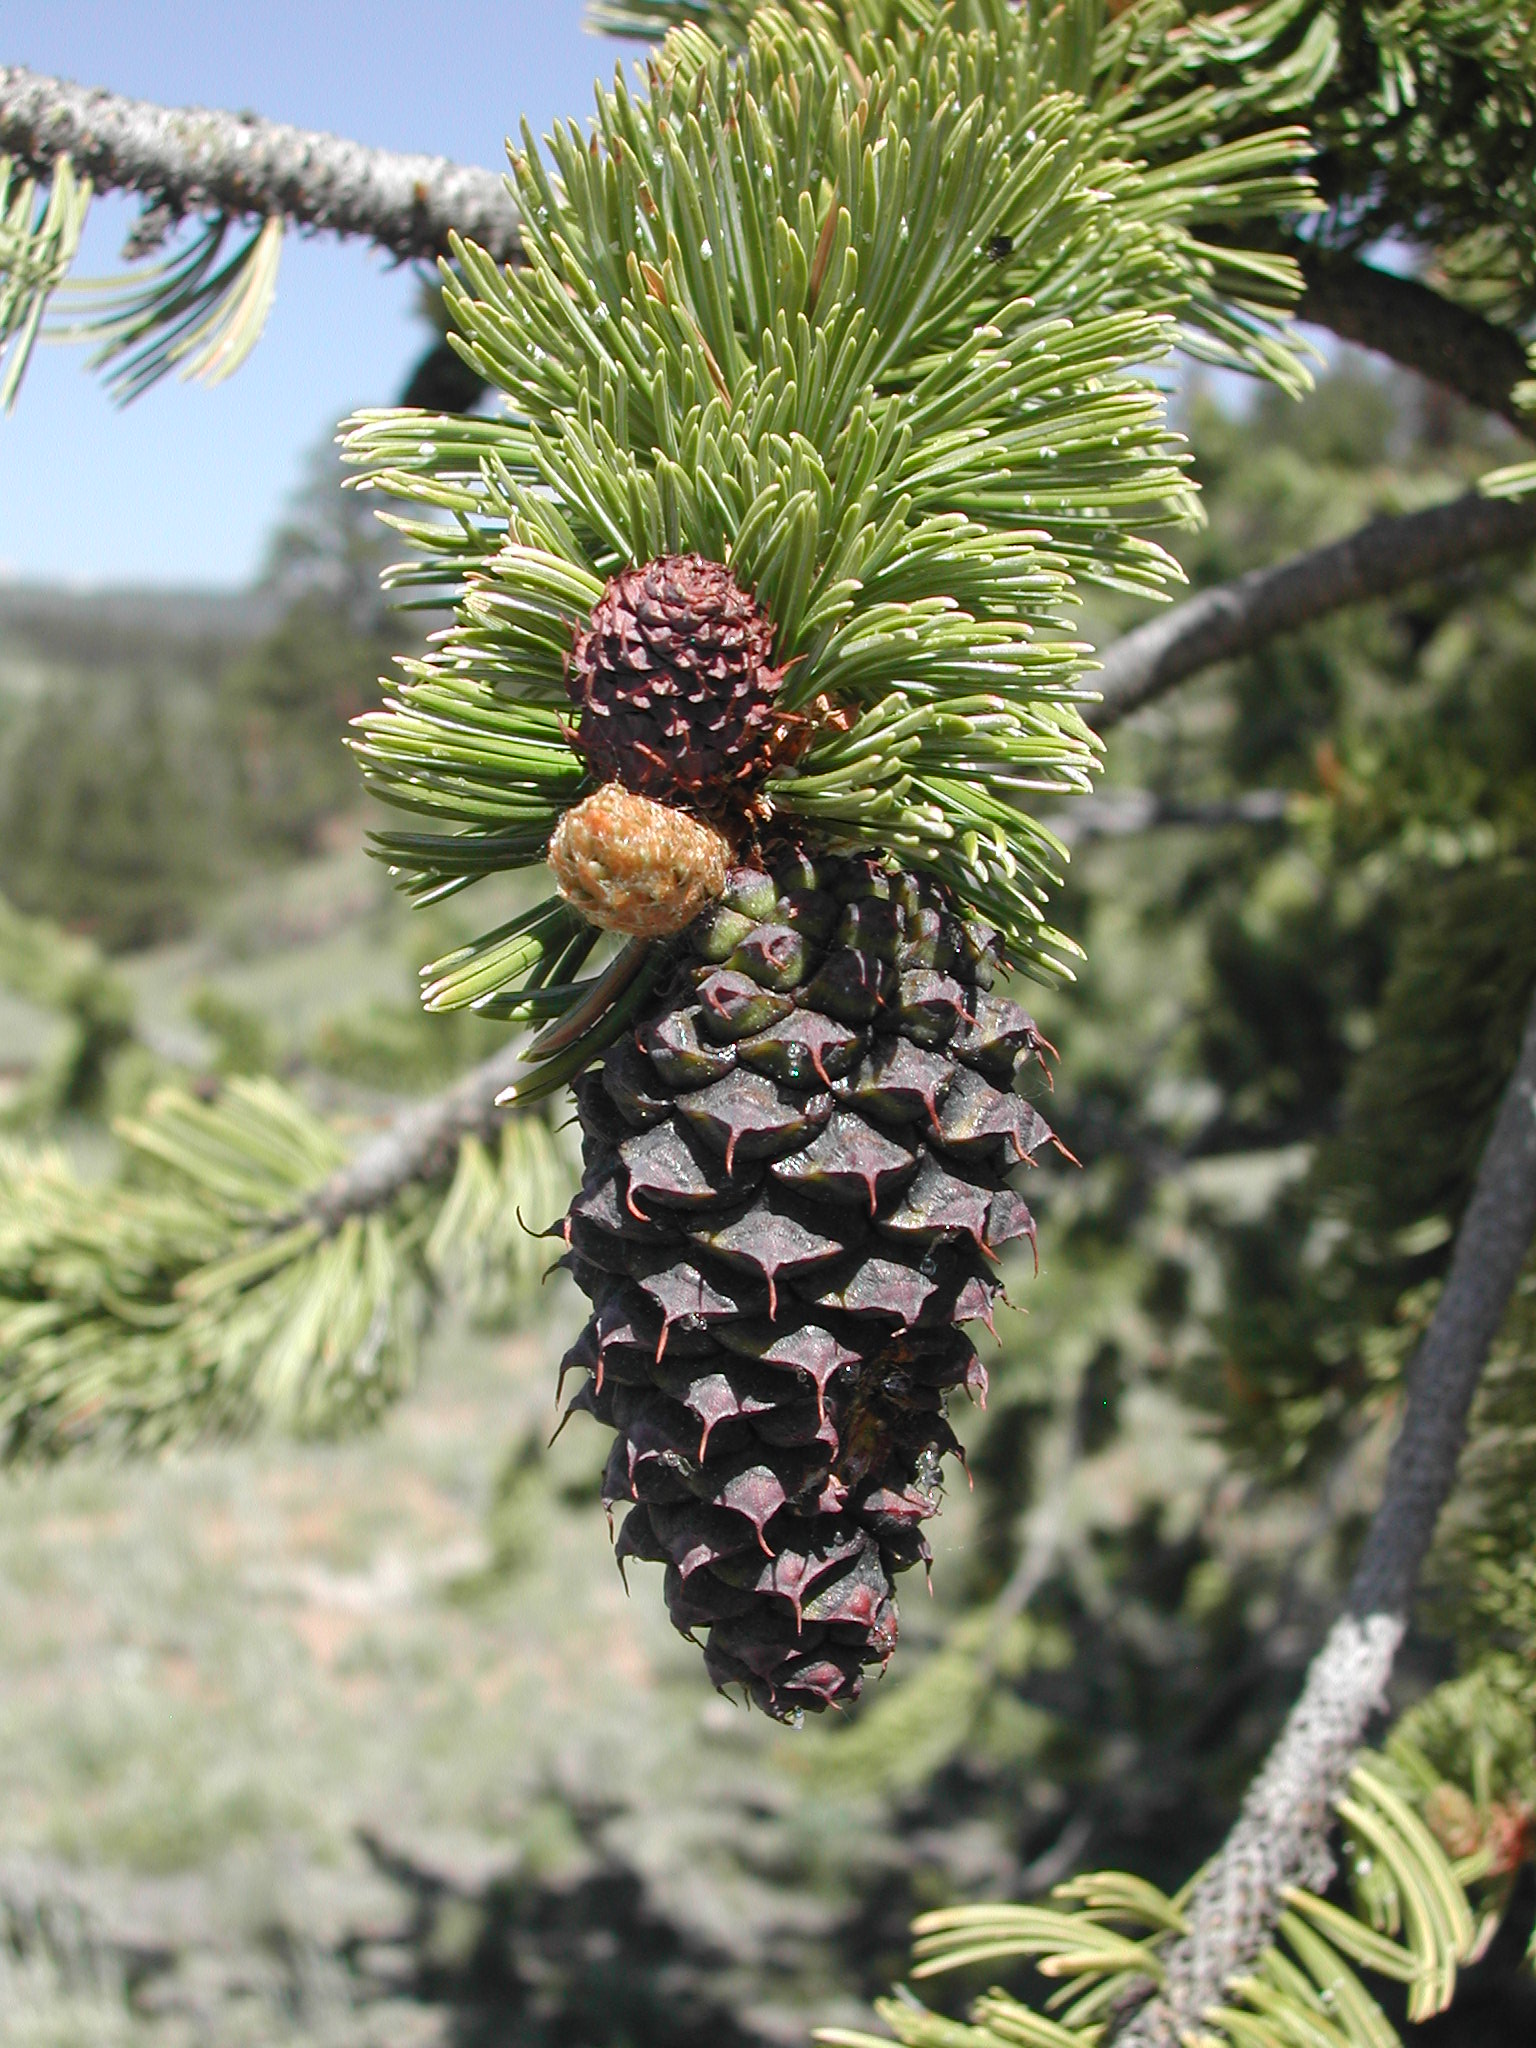 Второе характерное отличие - шишки. Они заметно различаются по длине шипа на чешуе: у Pinus longaeva он не более 5 мм длиной, у Pinus longaeva (на снимке) – не менее 10 мм.